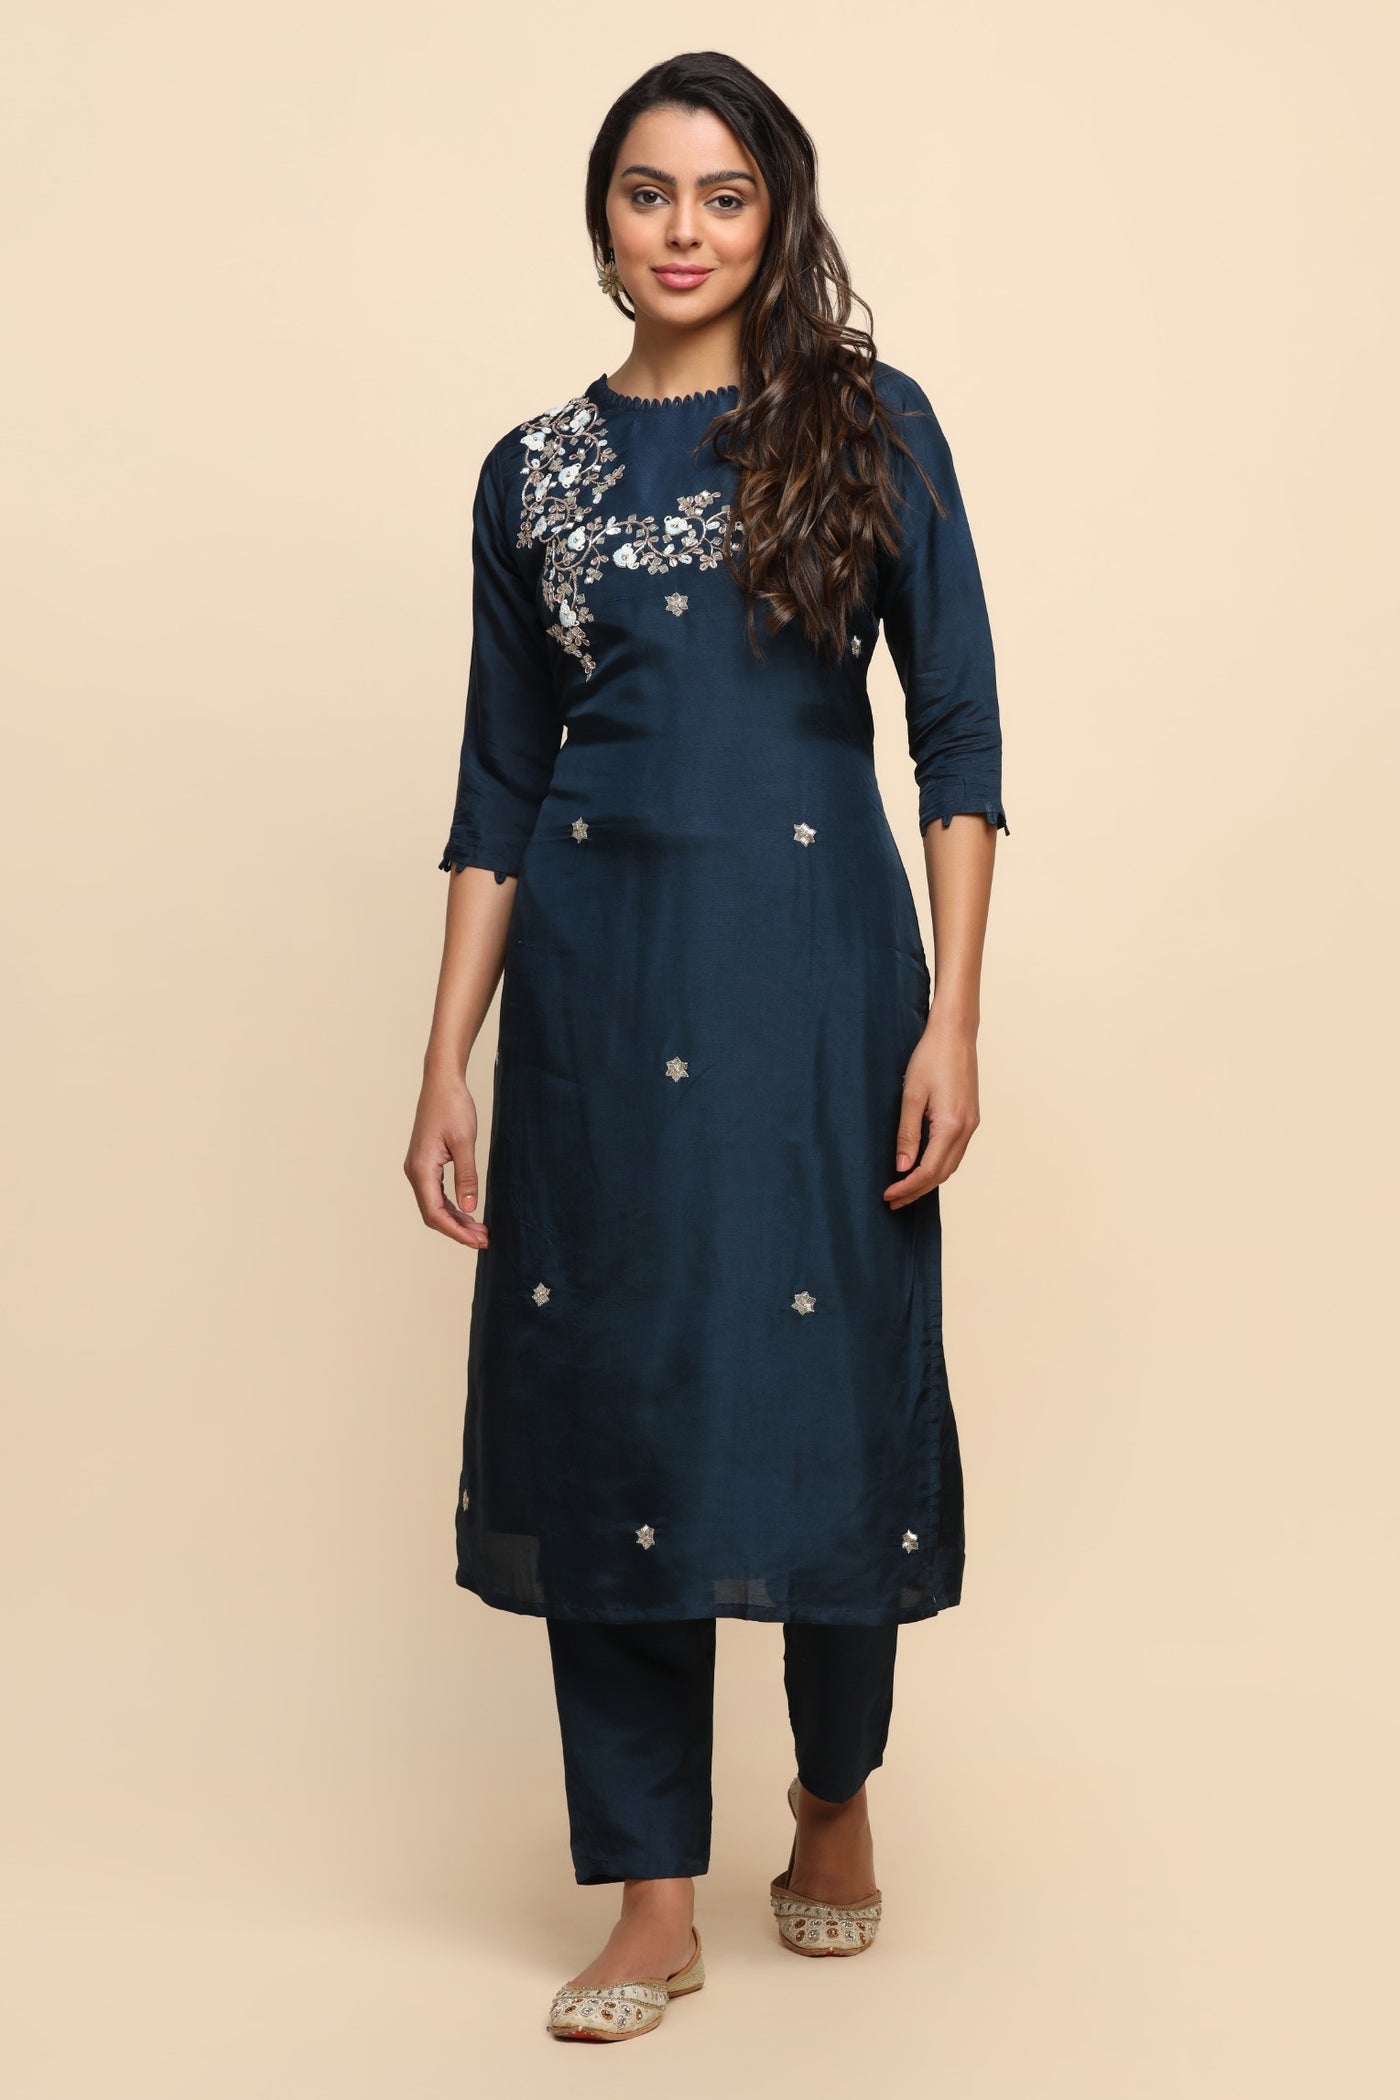 Elegant royal blue color floral motif embroidered kurta set